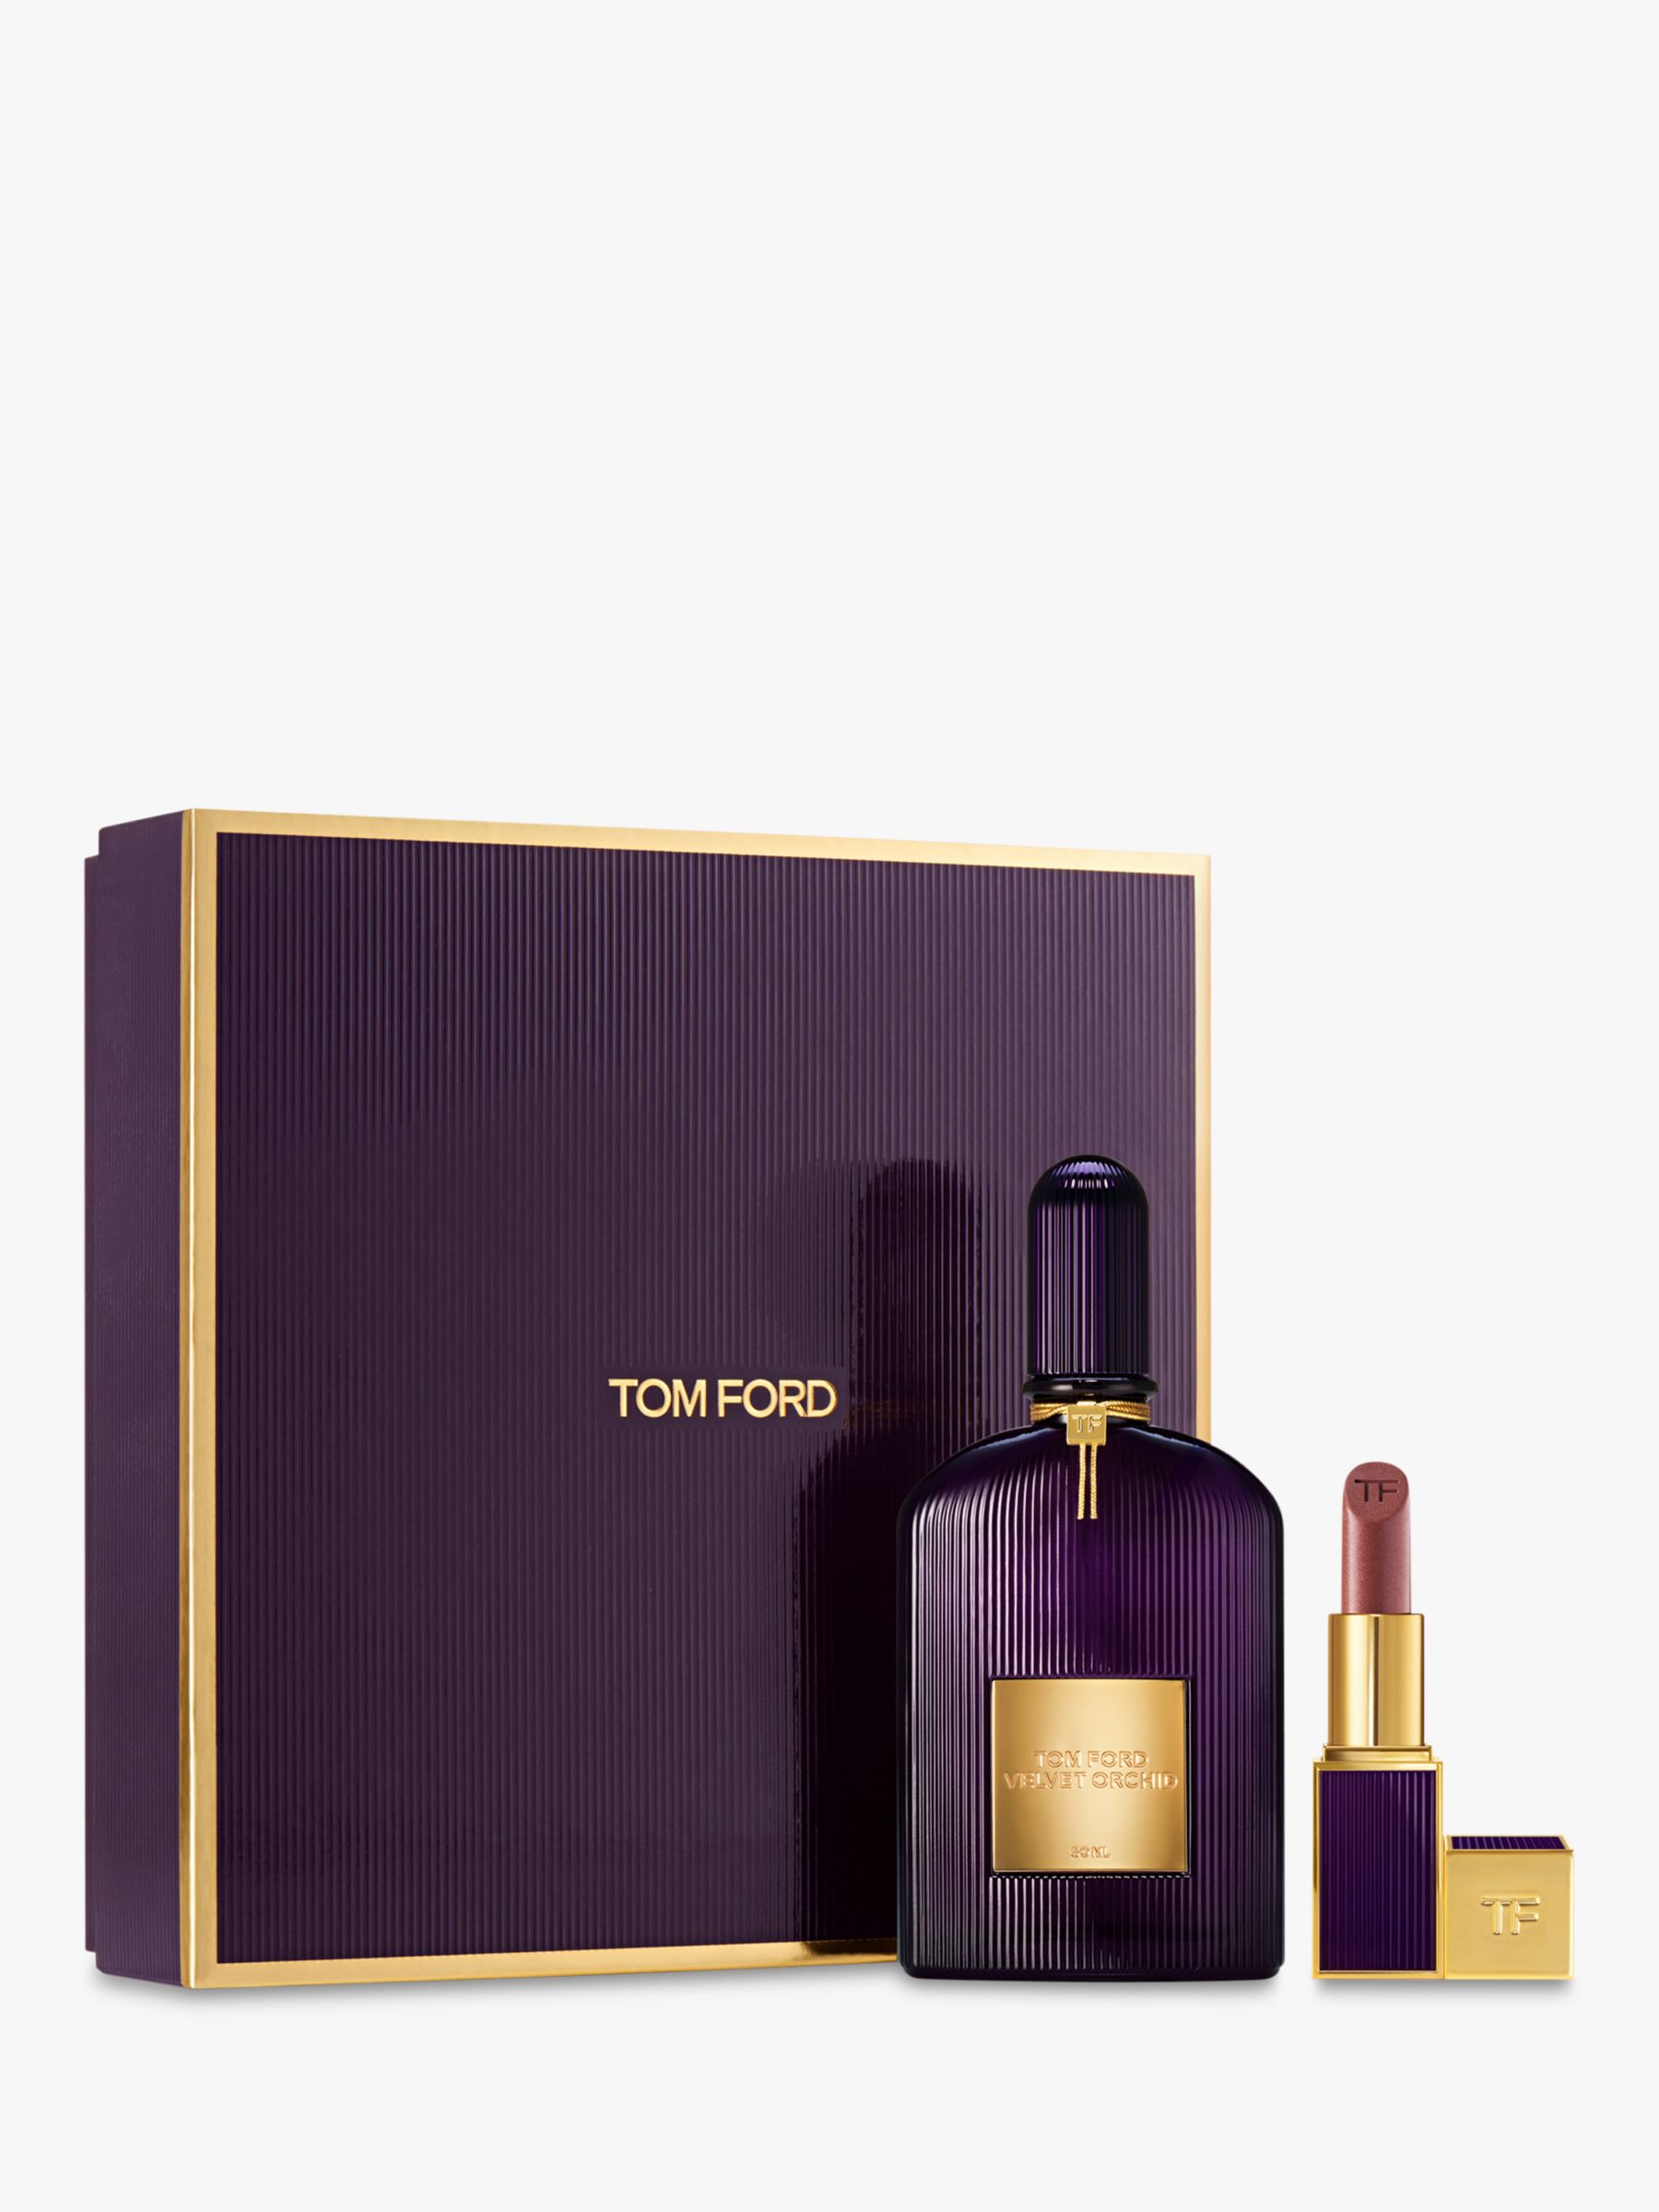 TOM FORD Velvet Orchid 50ml Gift Parfum Set de Fragrance Eau